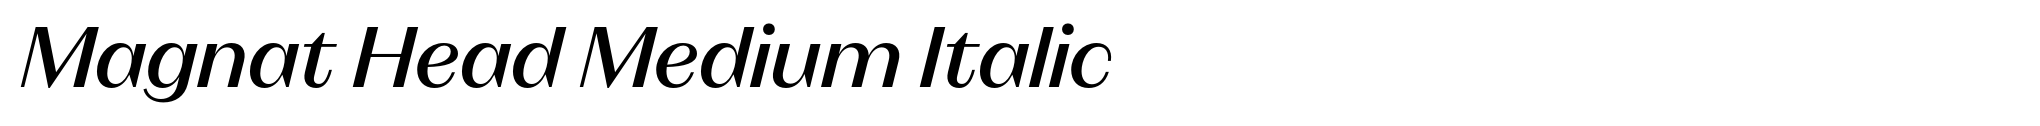 Magnat Head Medium Italic image